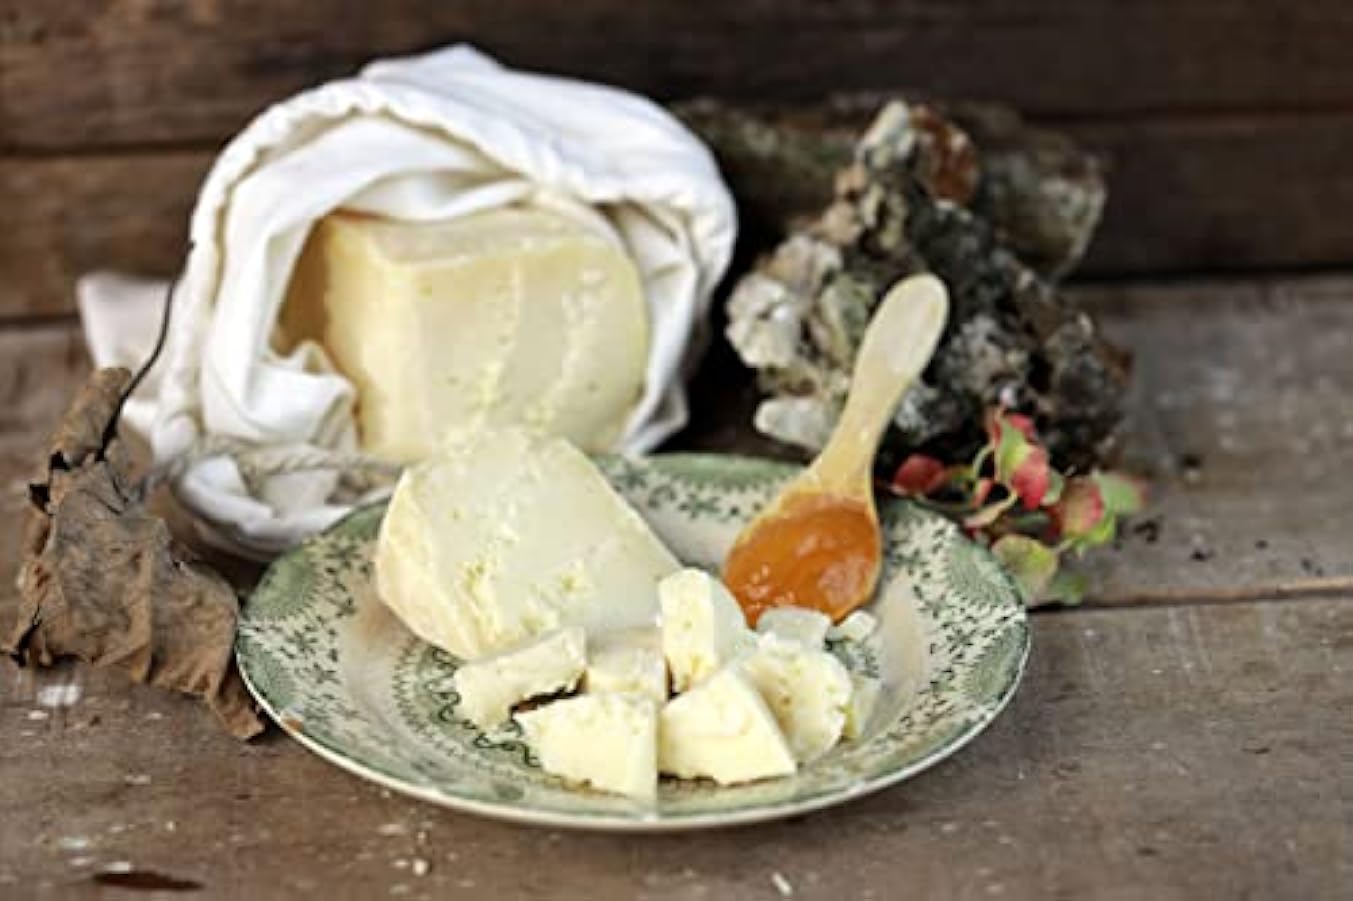 Talamello il Pecorino di Fossa | mezza forma sottovuoto da 0,6 kg | formaggio artigianale Toscano | Salumificio Artigianale Gombitelli - Toscana 518656691